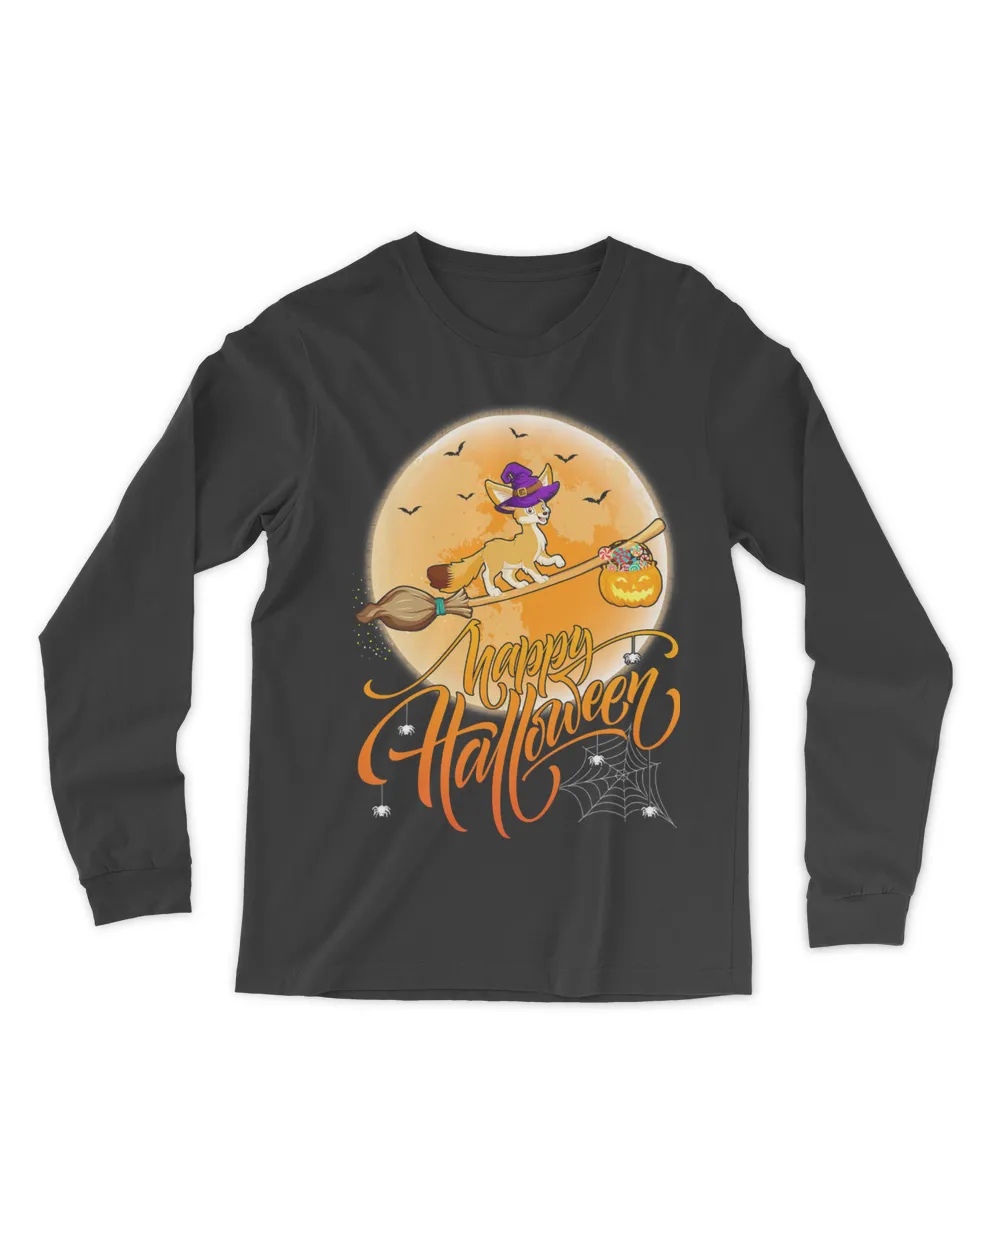 Fennec Fox Ride Witch Shotgun Funny Fennec Fox Halloween T-Shirt